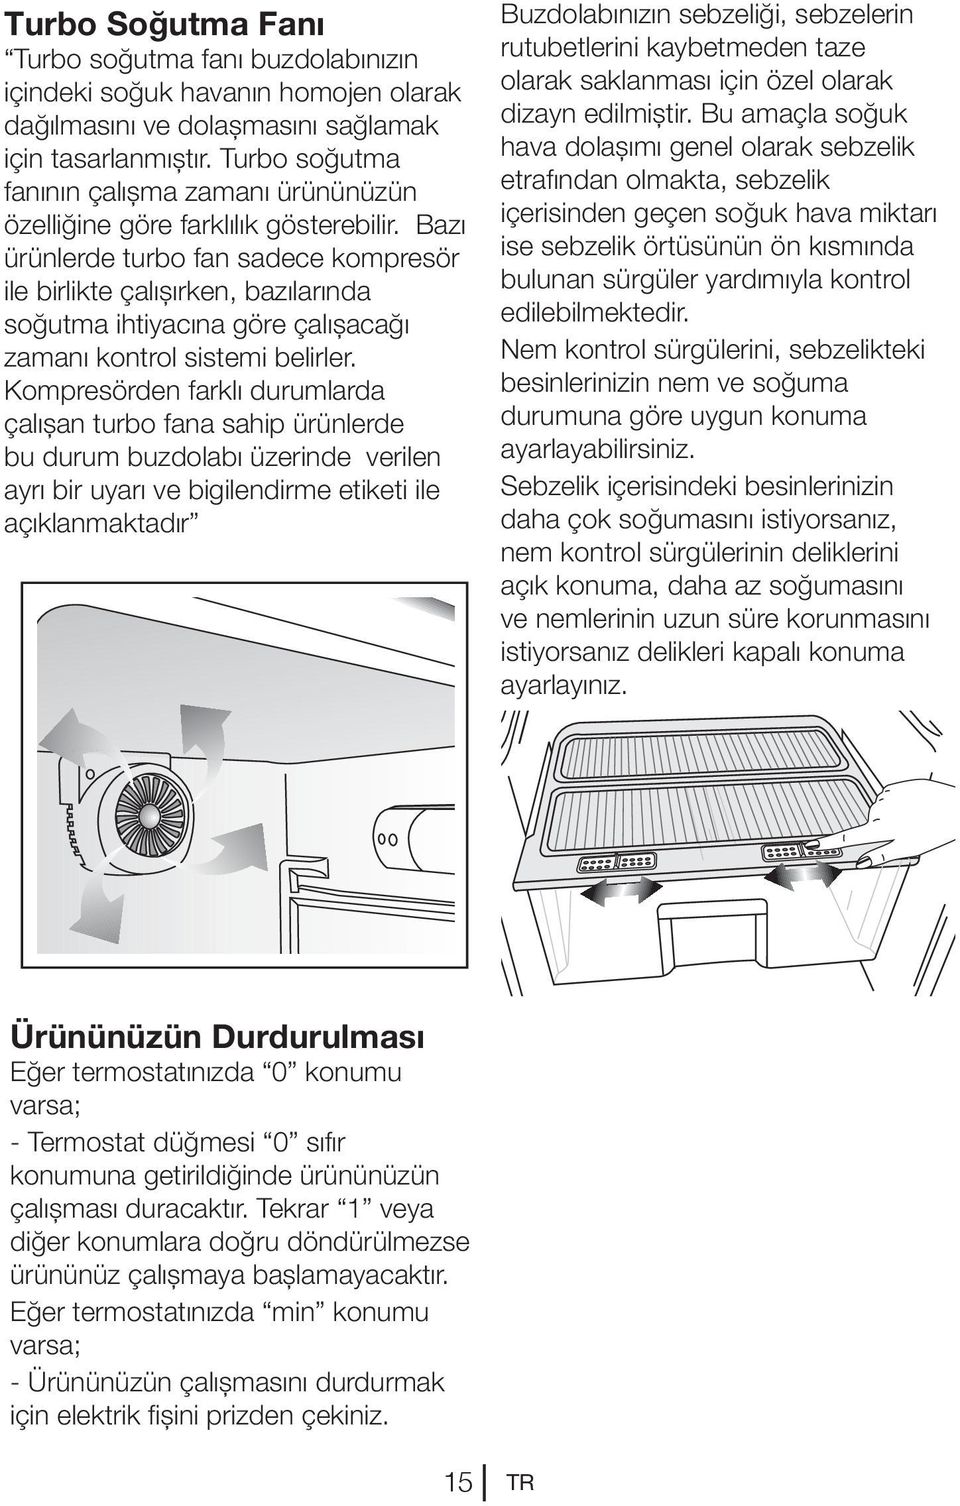 Bazı ürünlerde turbo fan sadece kompresör ile birlikte çalışırken, bazılarında soğutma ihtiyacına göre çalışacağı zamanı kontrol sistemi belirler.